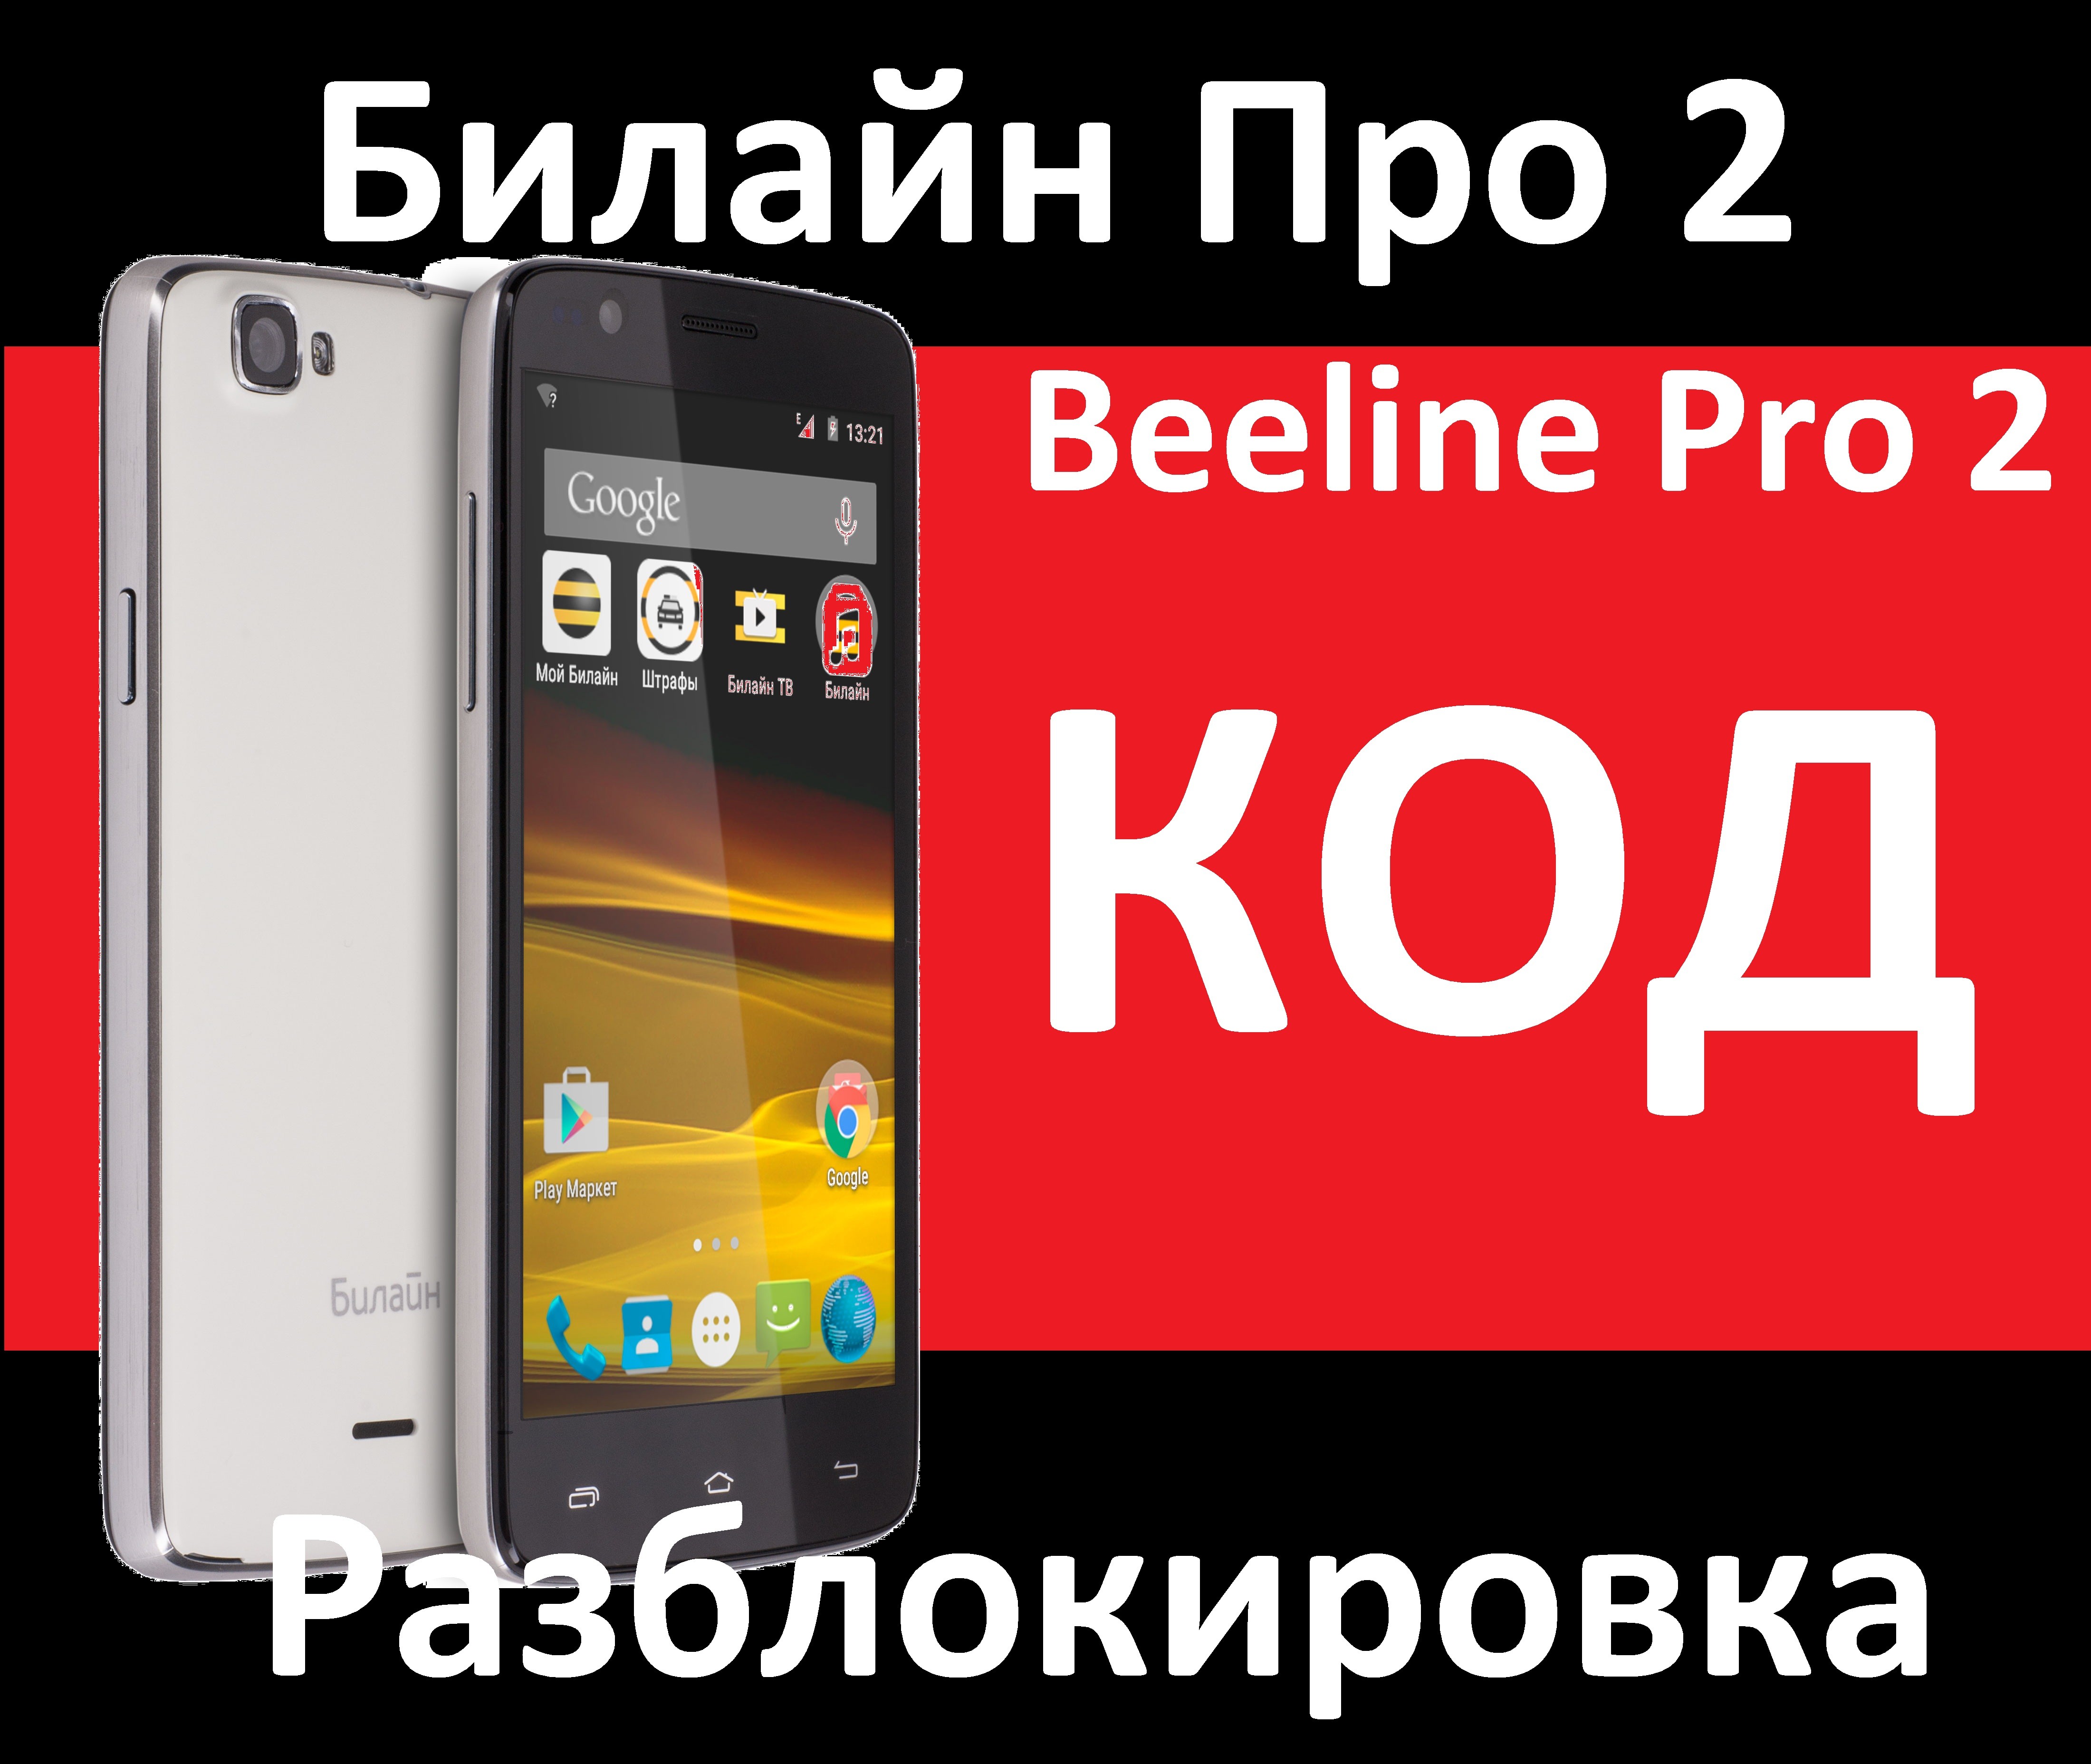 beeline Pro 2 code unlock nck